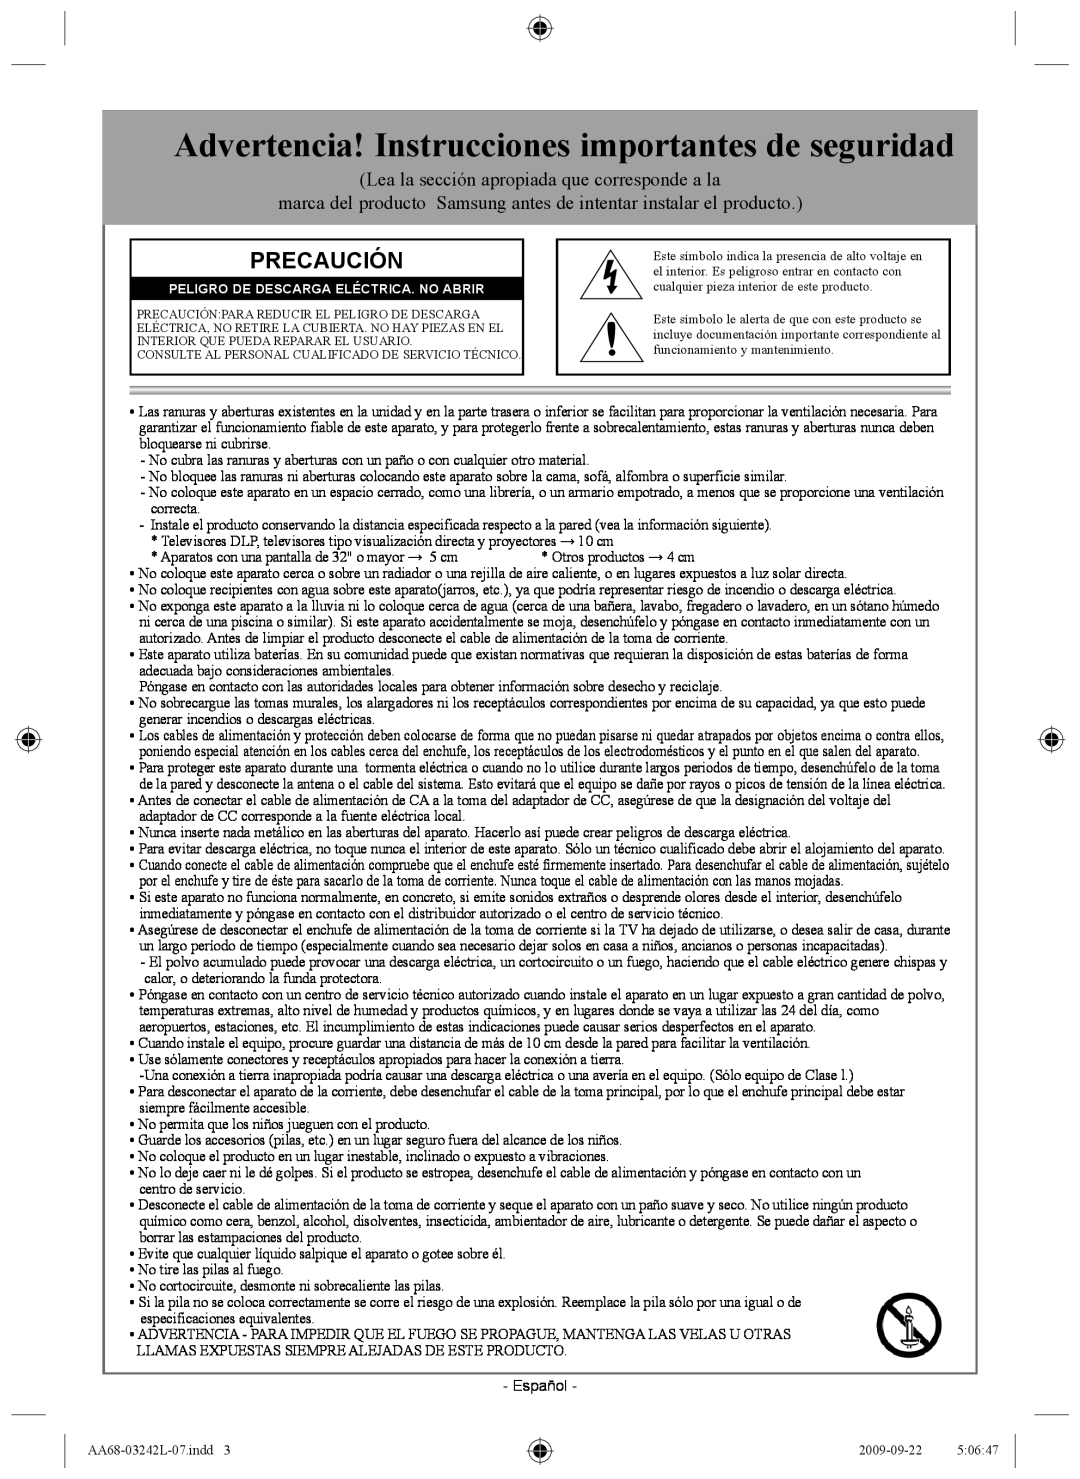 Samsung AA68-03242L-07 important safety instructions Advertencia! Instrucciones importantes de seguridad, Precaución 